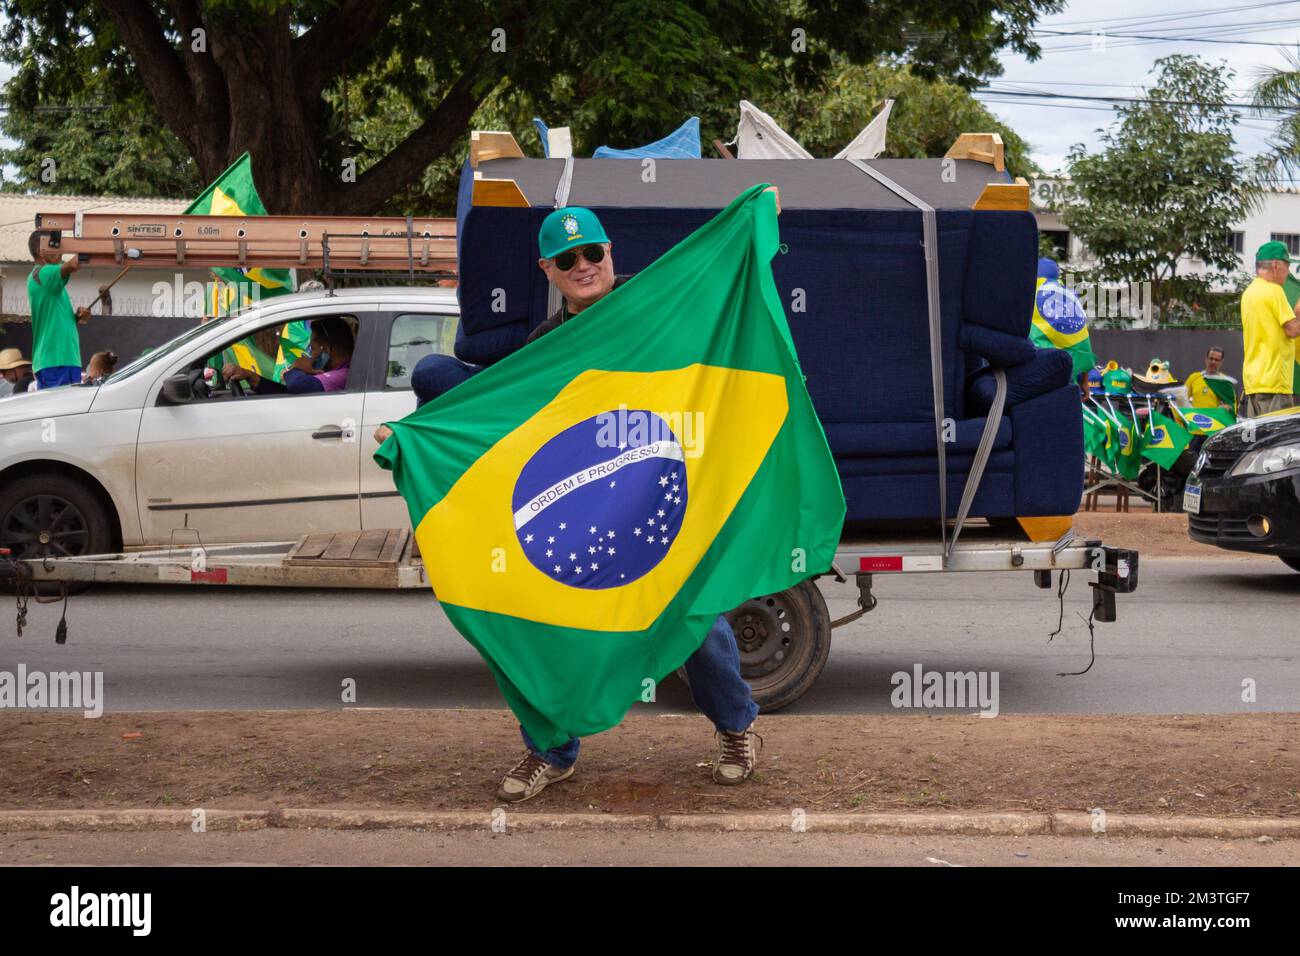 Anhänger von Präsident Bolsonaro führen in der Stadt Goiânia einen Staatsstreich durch, GO. Aufruf zu einer staatlichen Intervention gegen Lulas demokratische Wahl Stockfoto